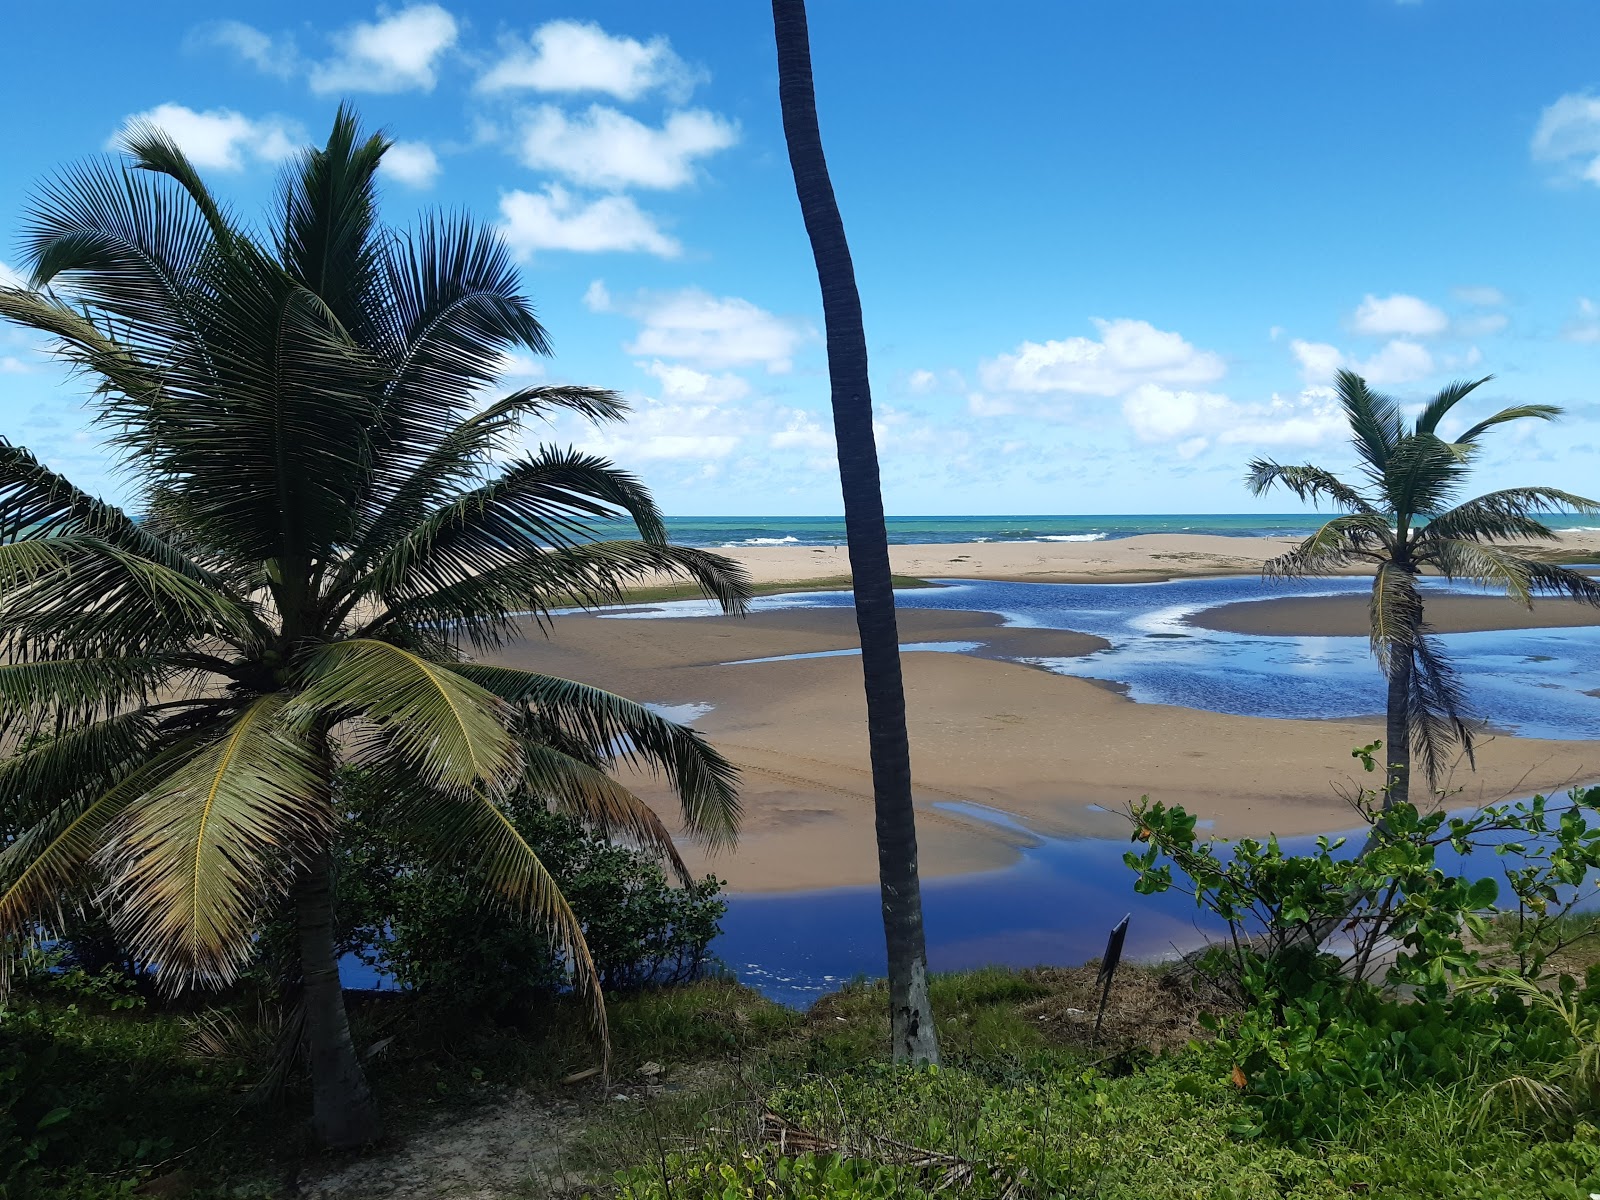 Foto von Praia de Imbassai - beliebter Ort unter Entspannungskennern